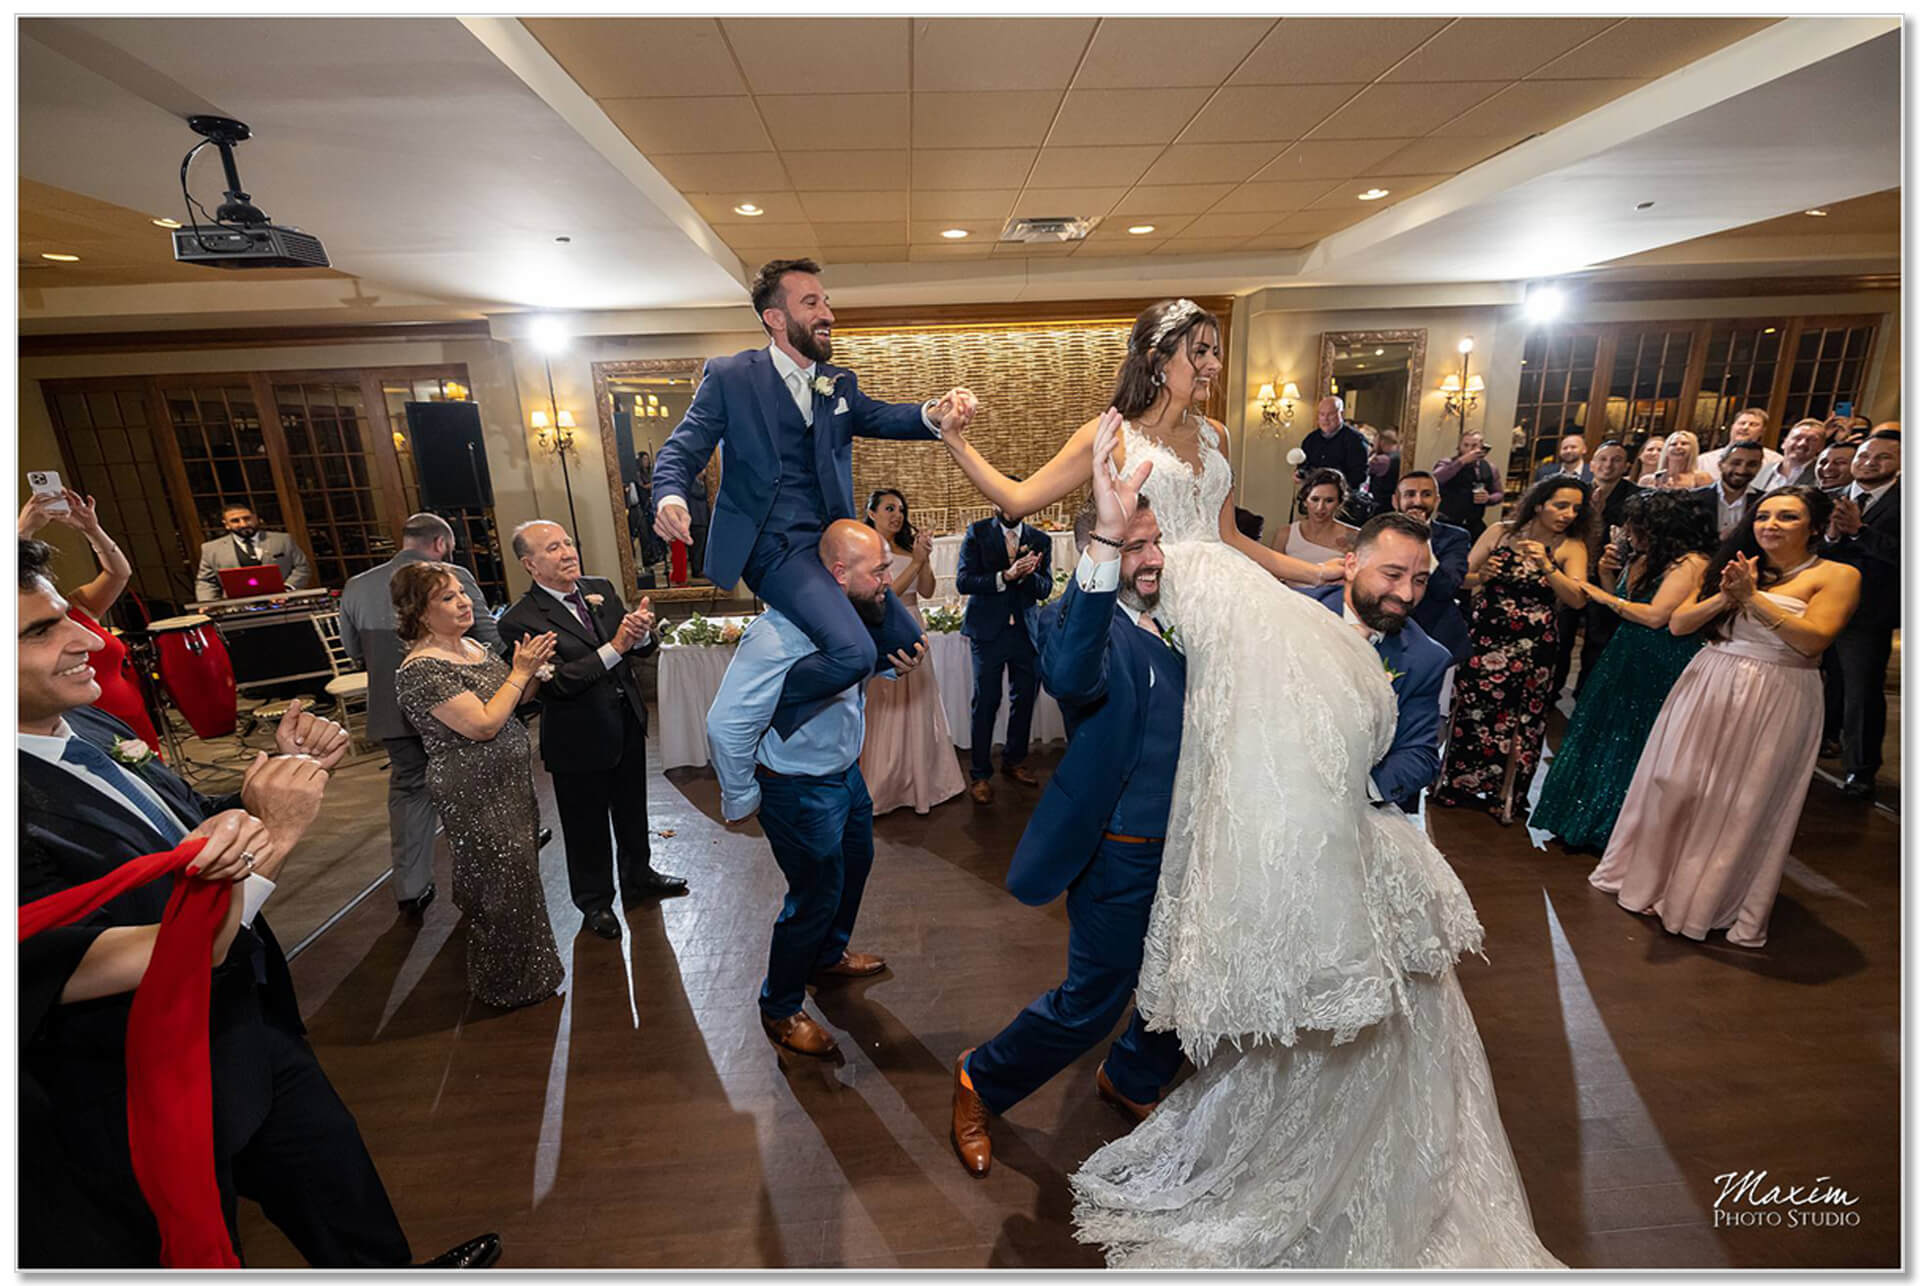 Madison Event Center reception bride groom shoulder dancing Lebanese